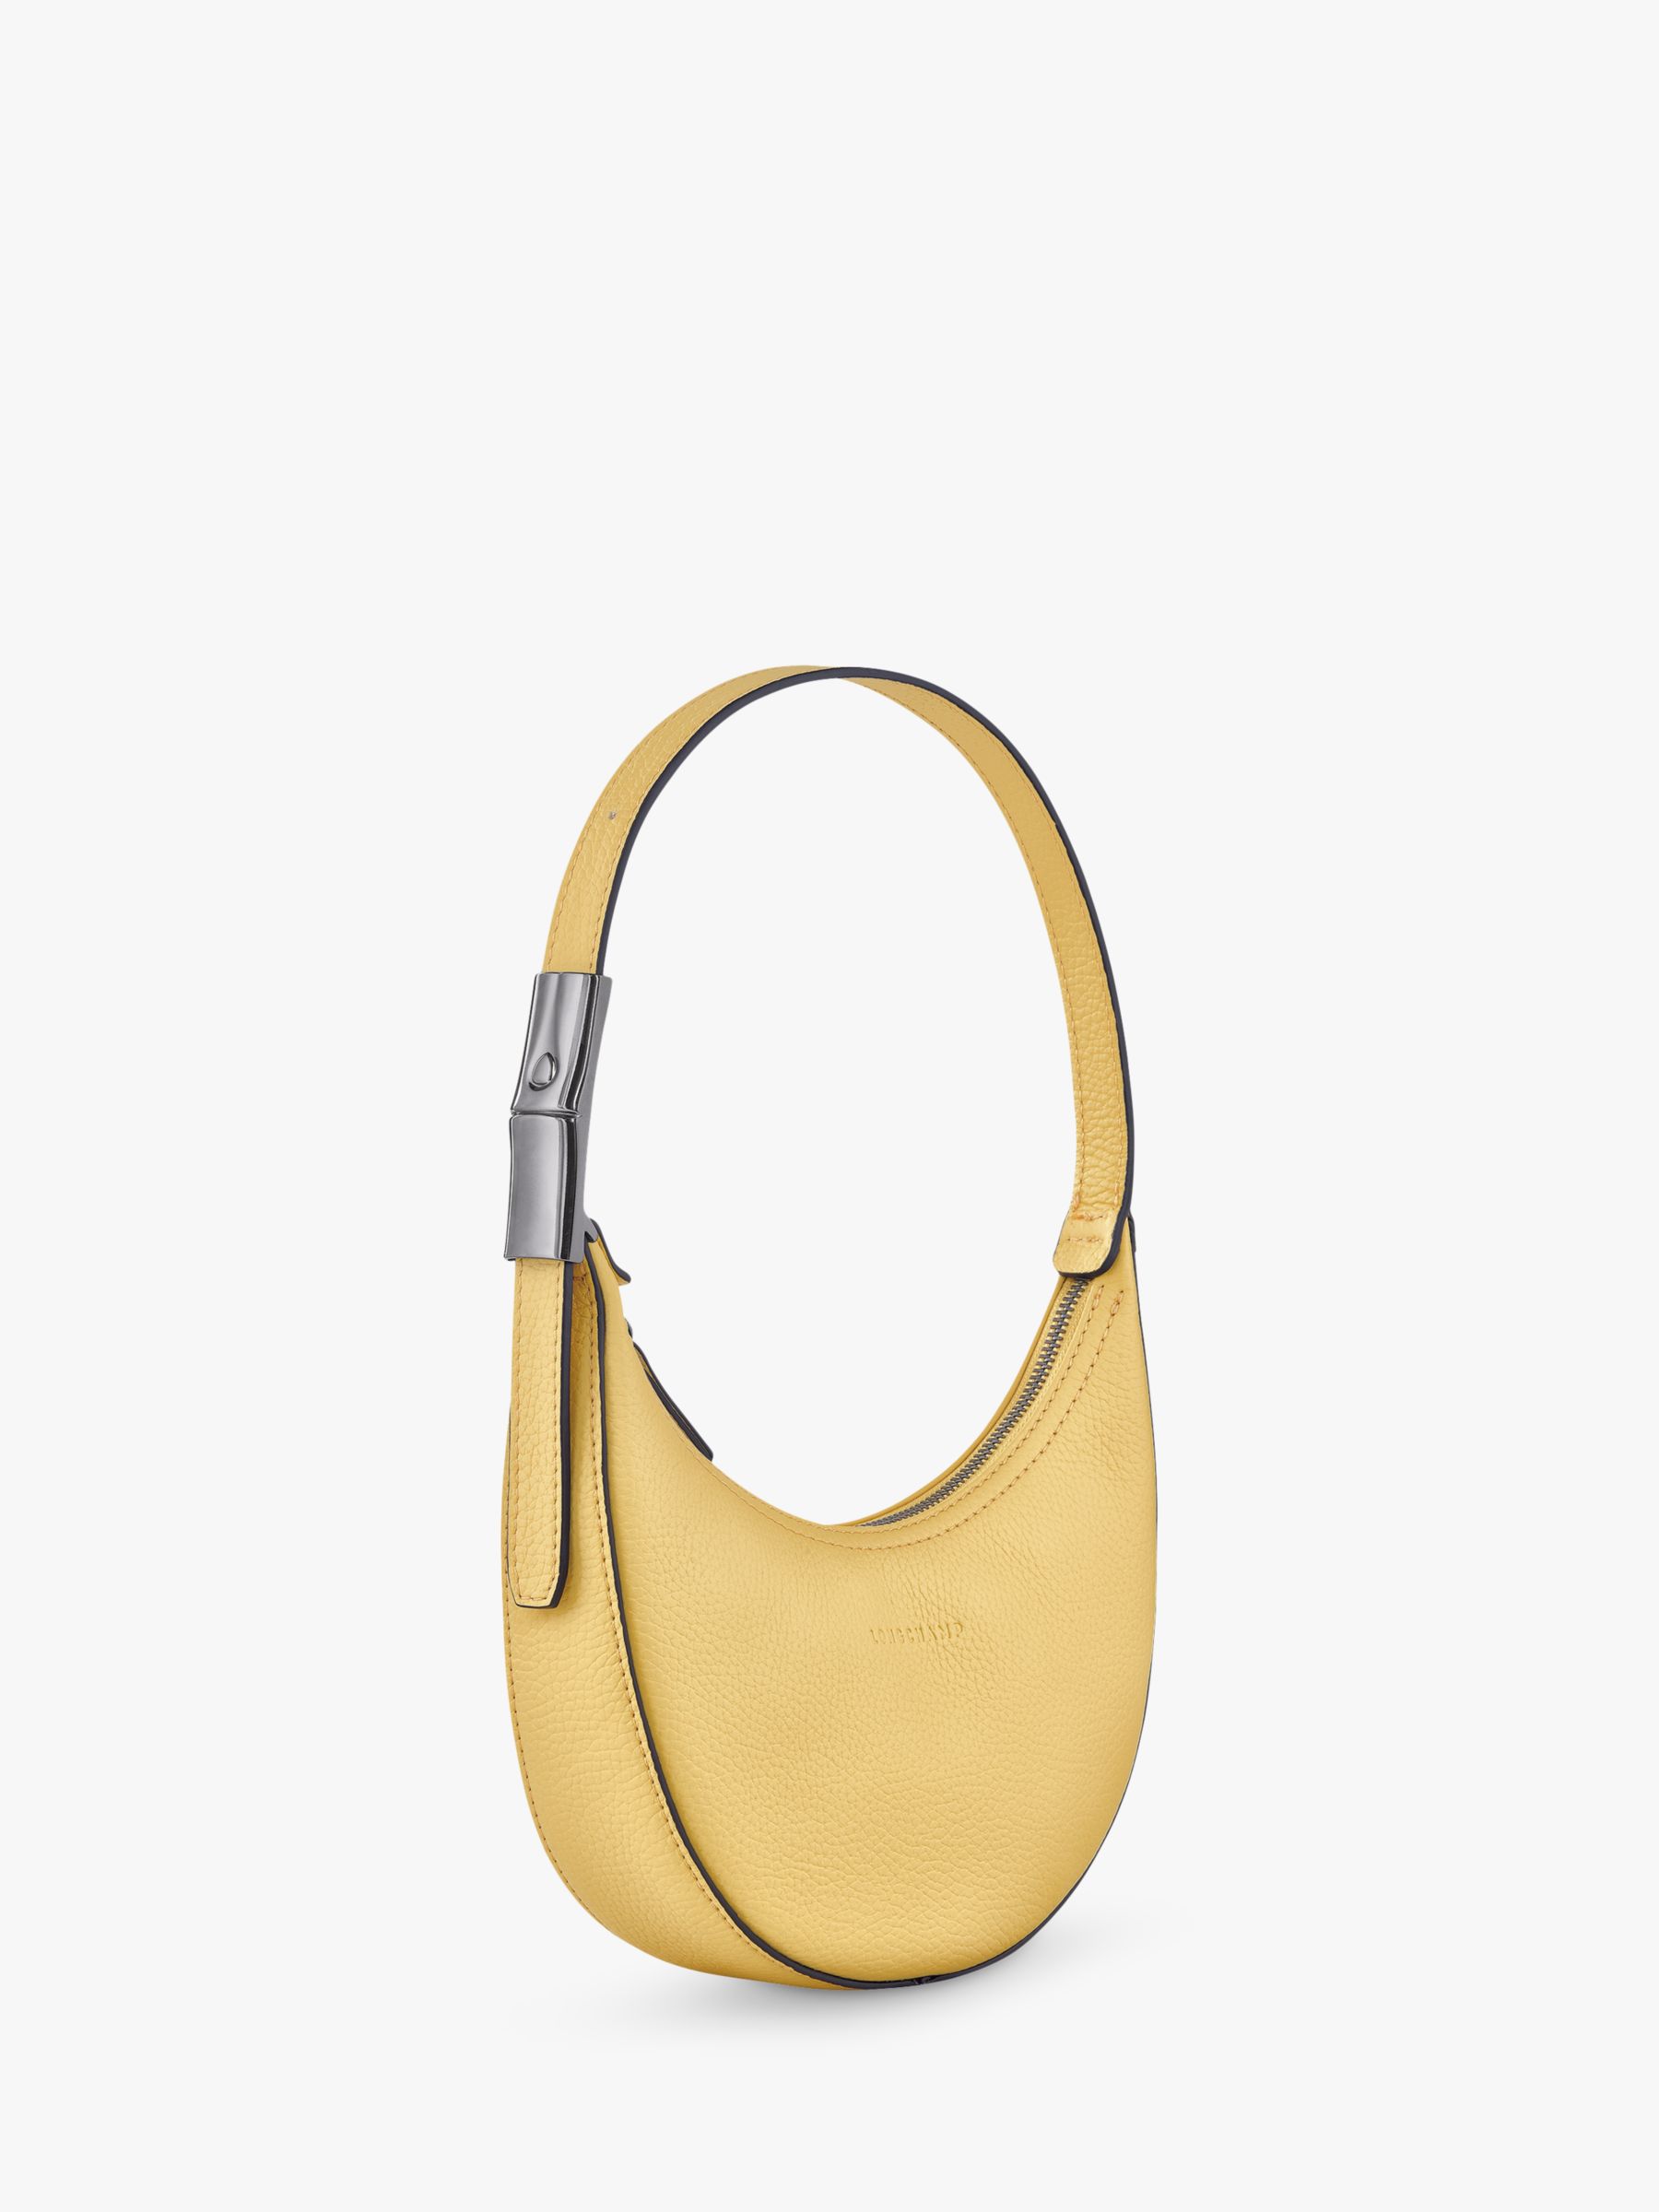 Longchamp Roseau Essential Small Hobo Bag – Petticoat Lane Bag Shop